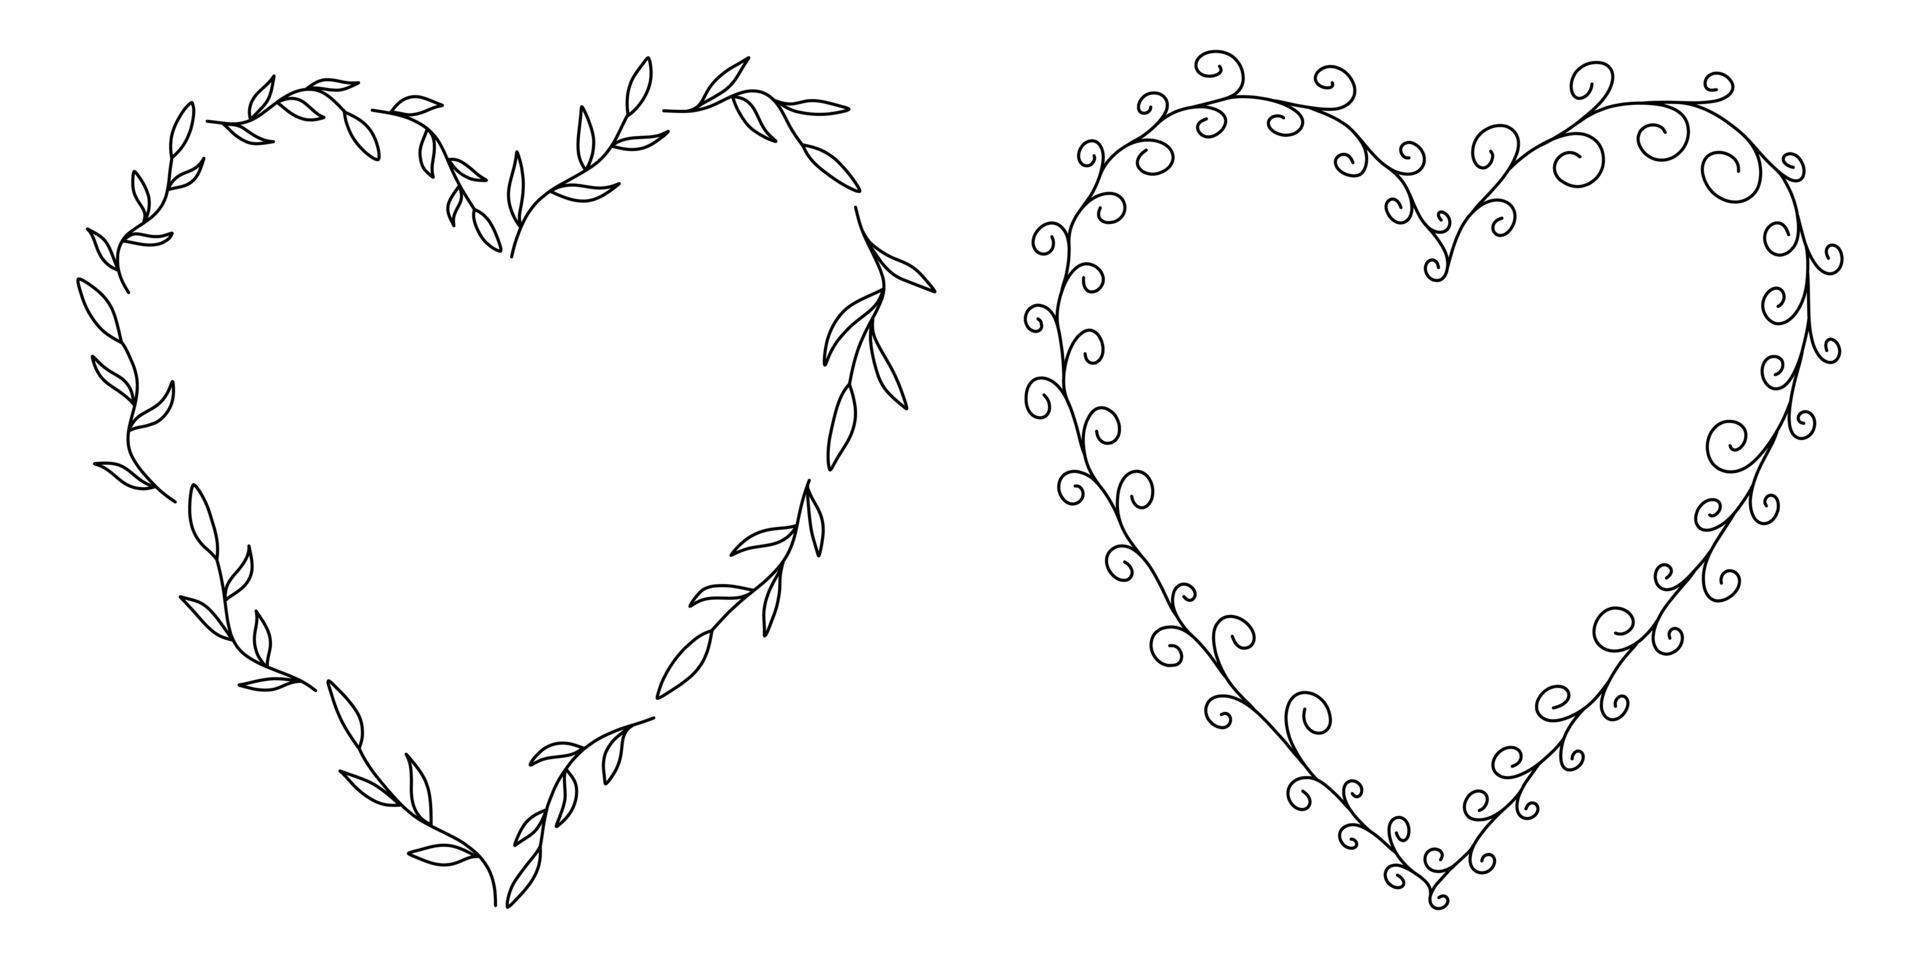 Vektorblumenrahmen in schwarzer Lineart-Stilillustration vektor